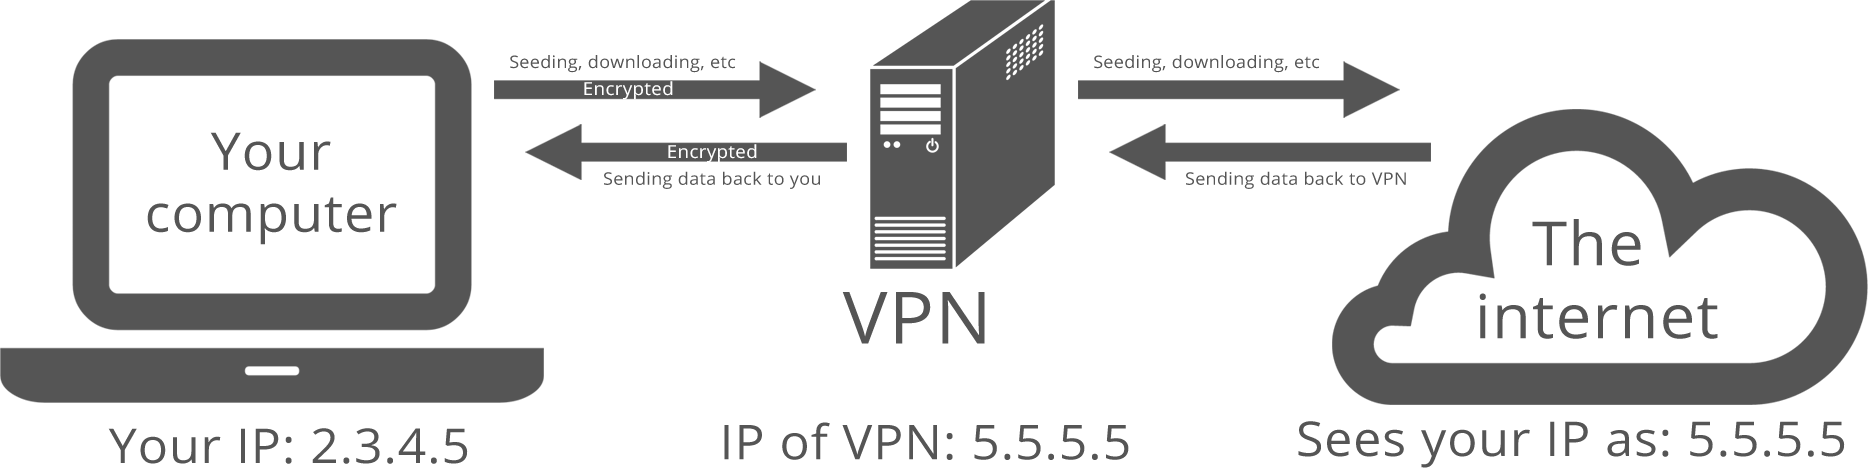 VPN (Virtual Private Network) คืออะไร มีประโยชน์อย่างไร พร้อมแนะนำแอป VPN ใช้ฟรี